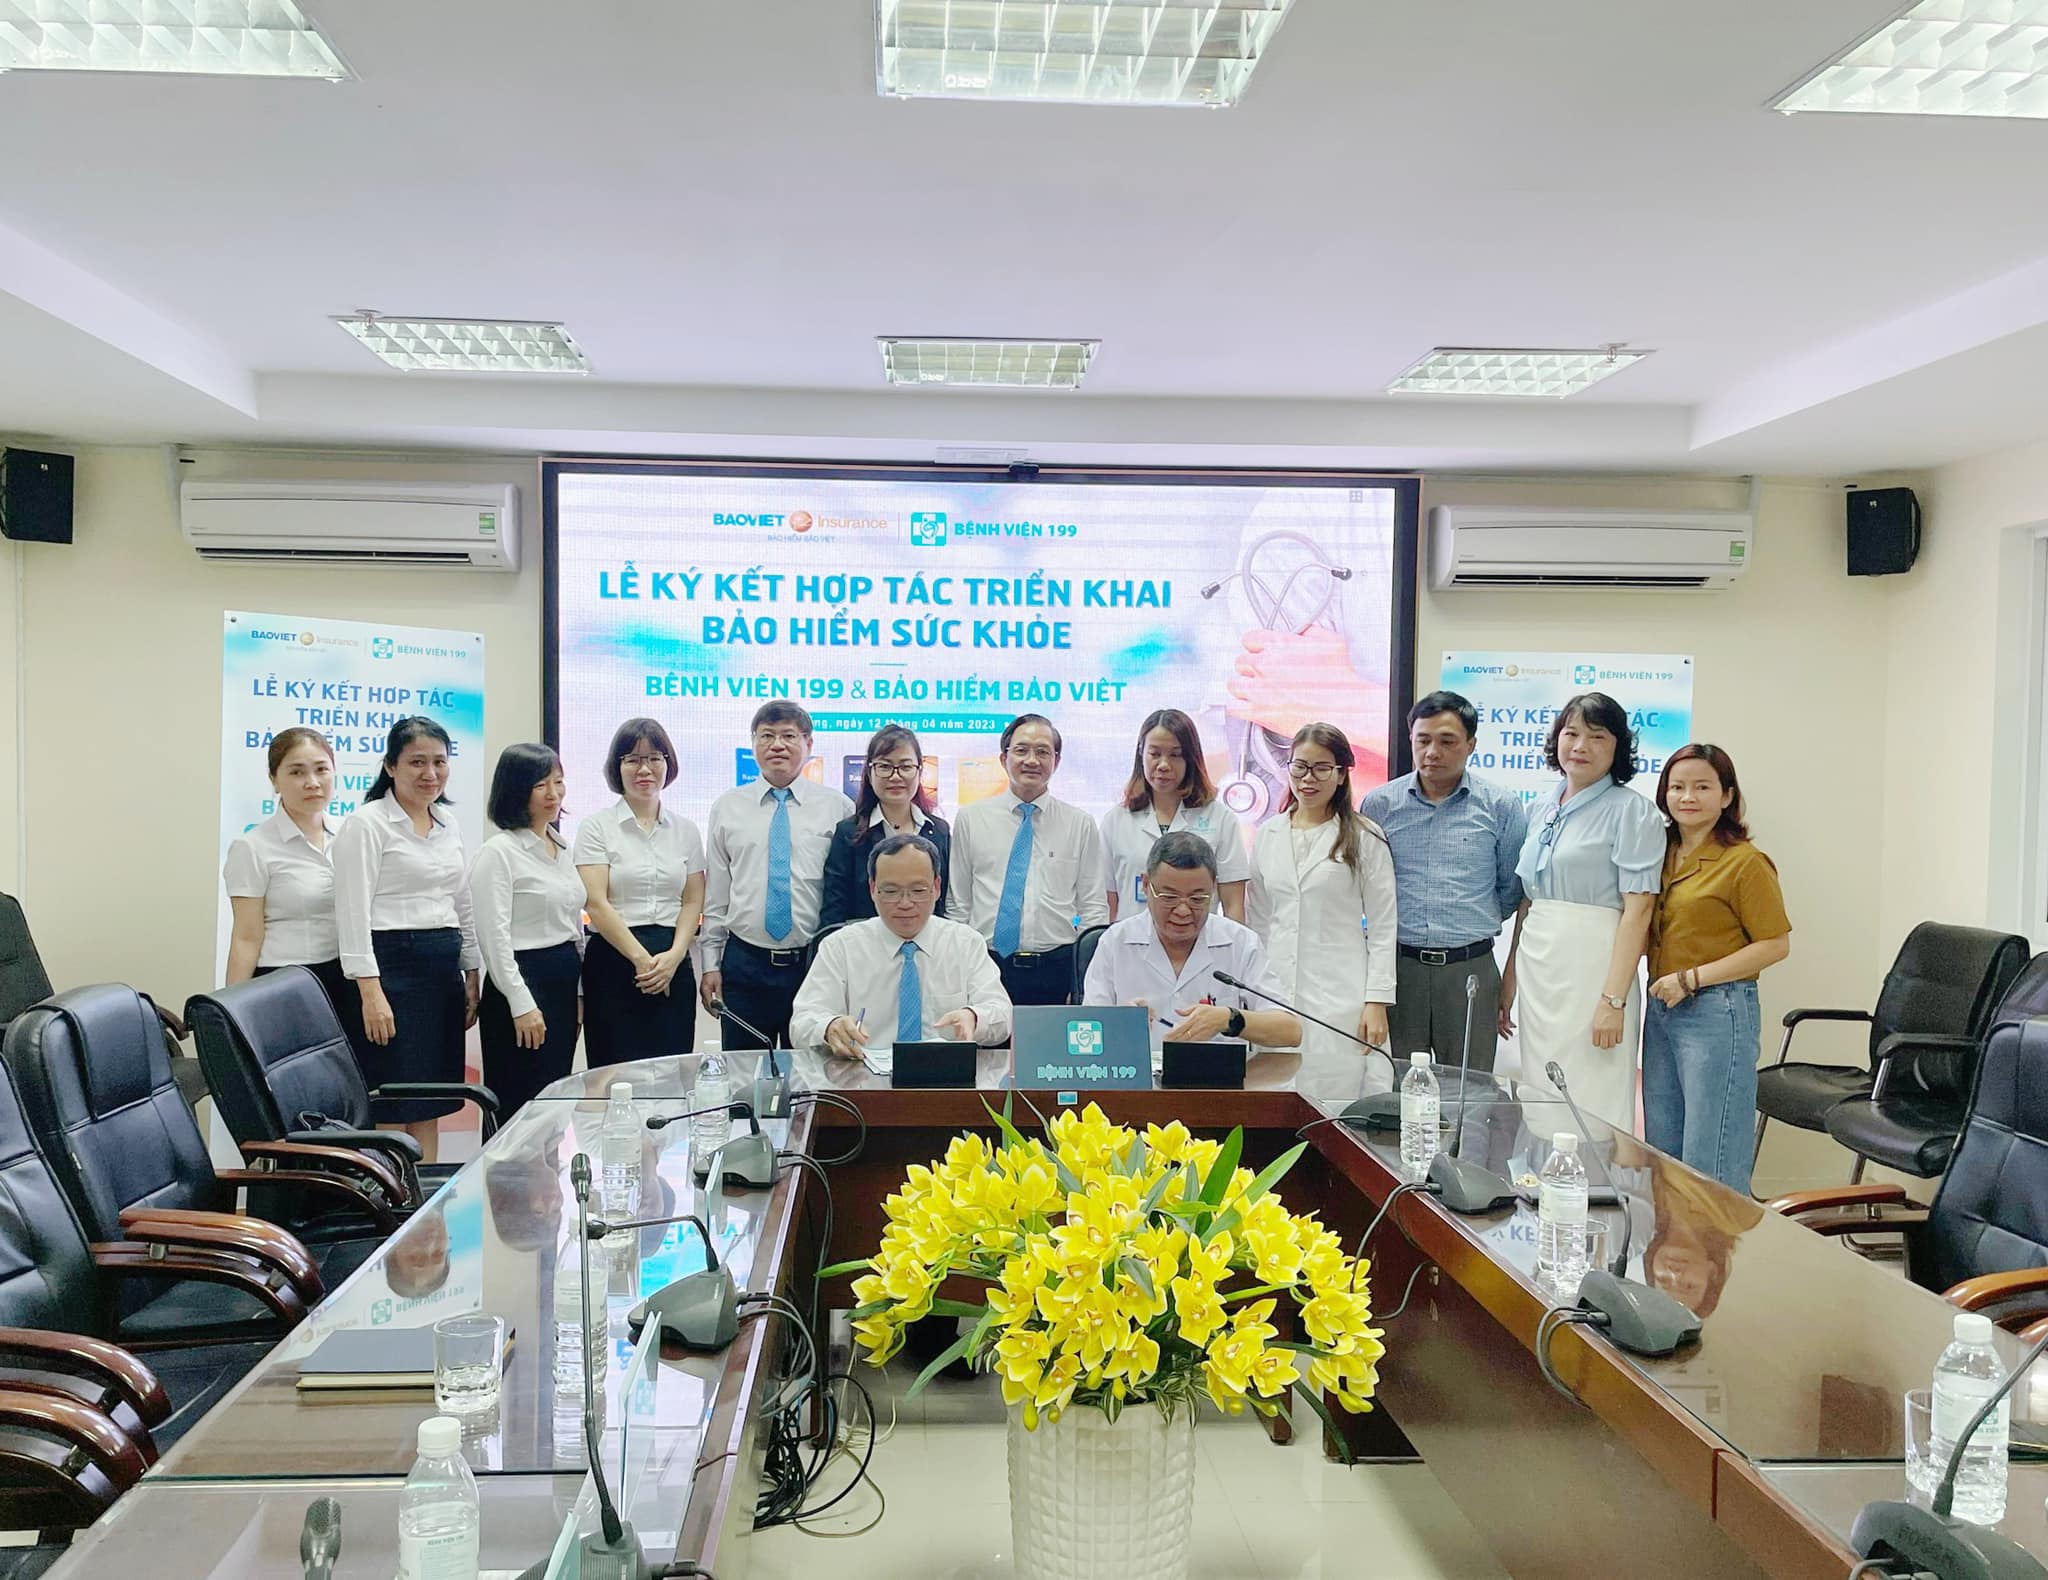 Bảo hiểm Bảo Việt và Bệnh viện 199 – Bộ Công An tại Sơn Trà, Đà Nẵng đã cùng nhau thỏa thuận, ký kết hợp tác triển khai bảo hiểm sức khoẻ.